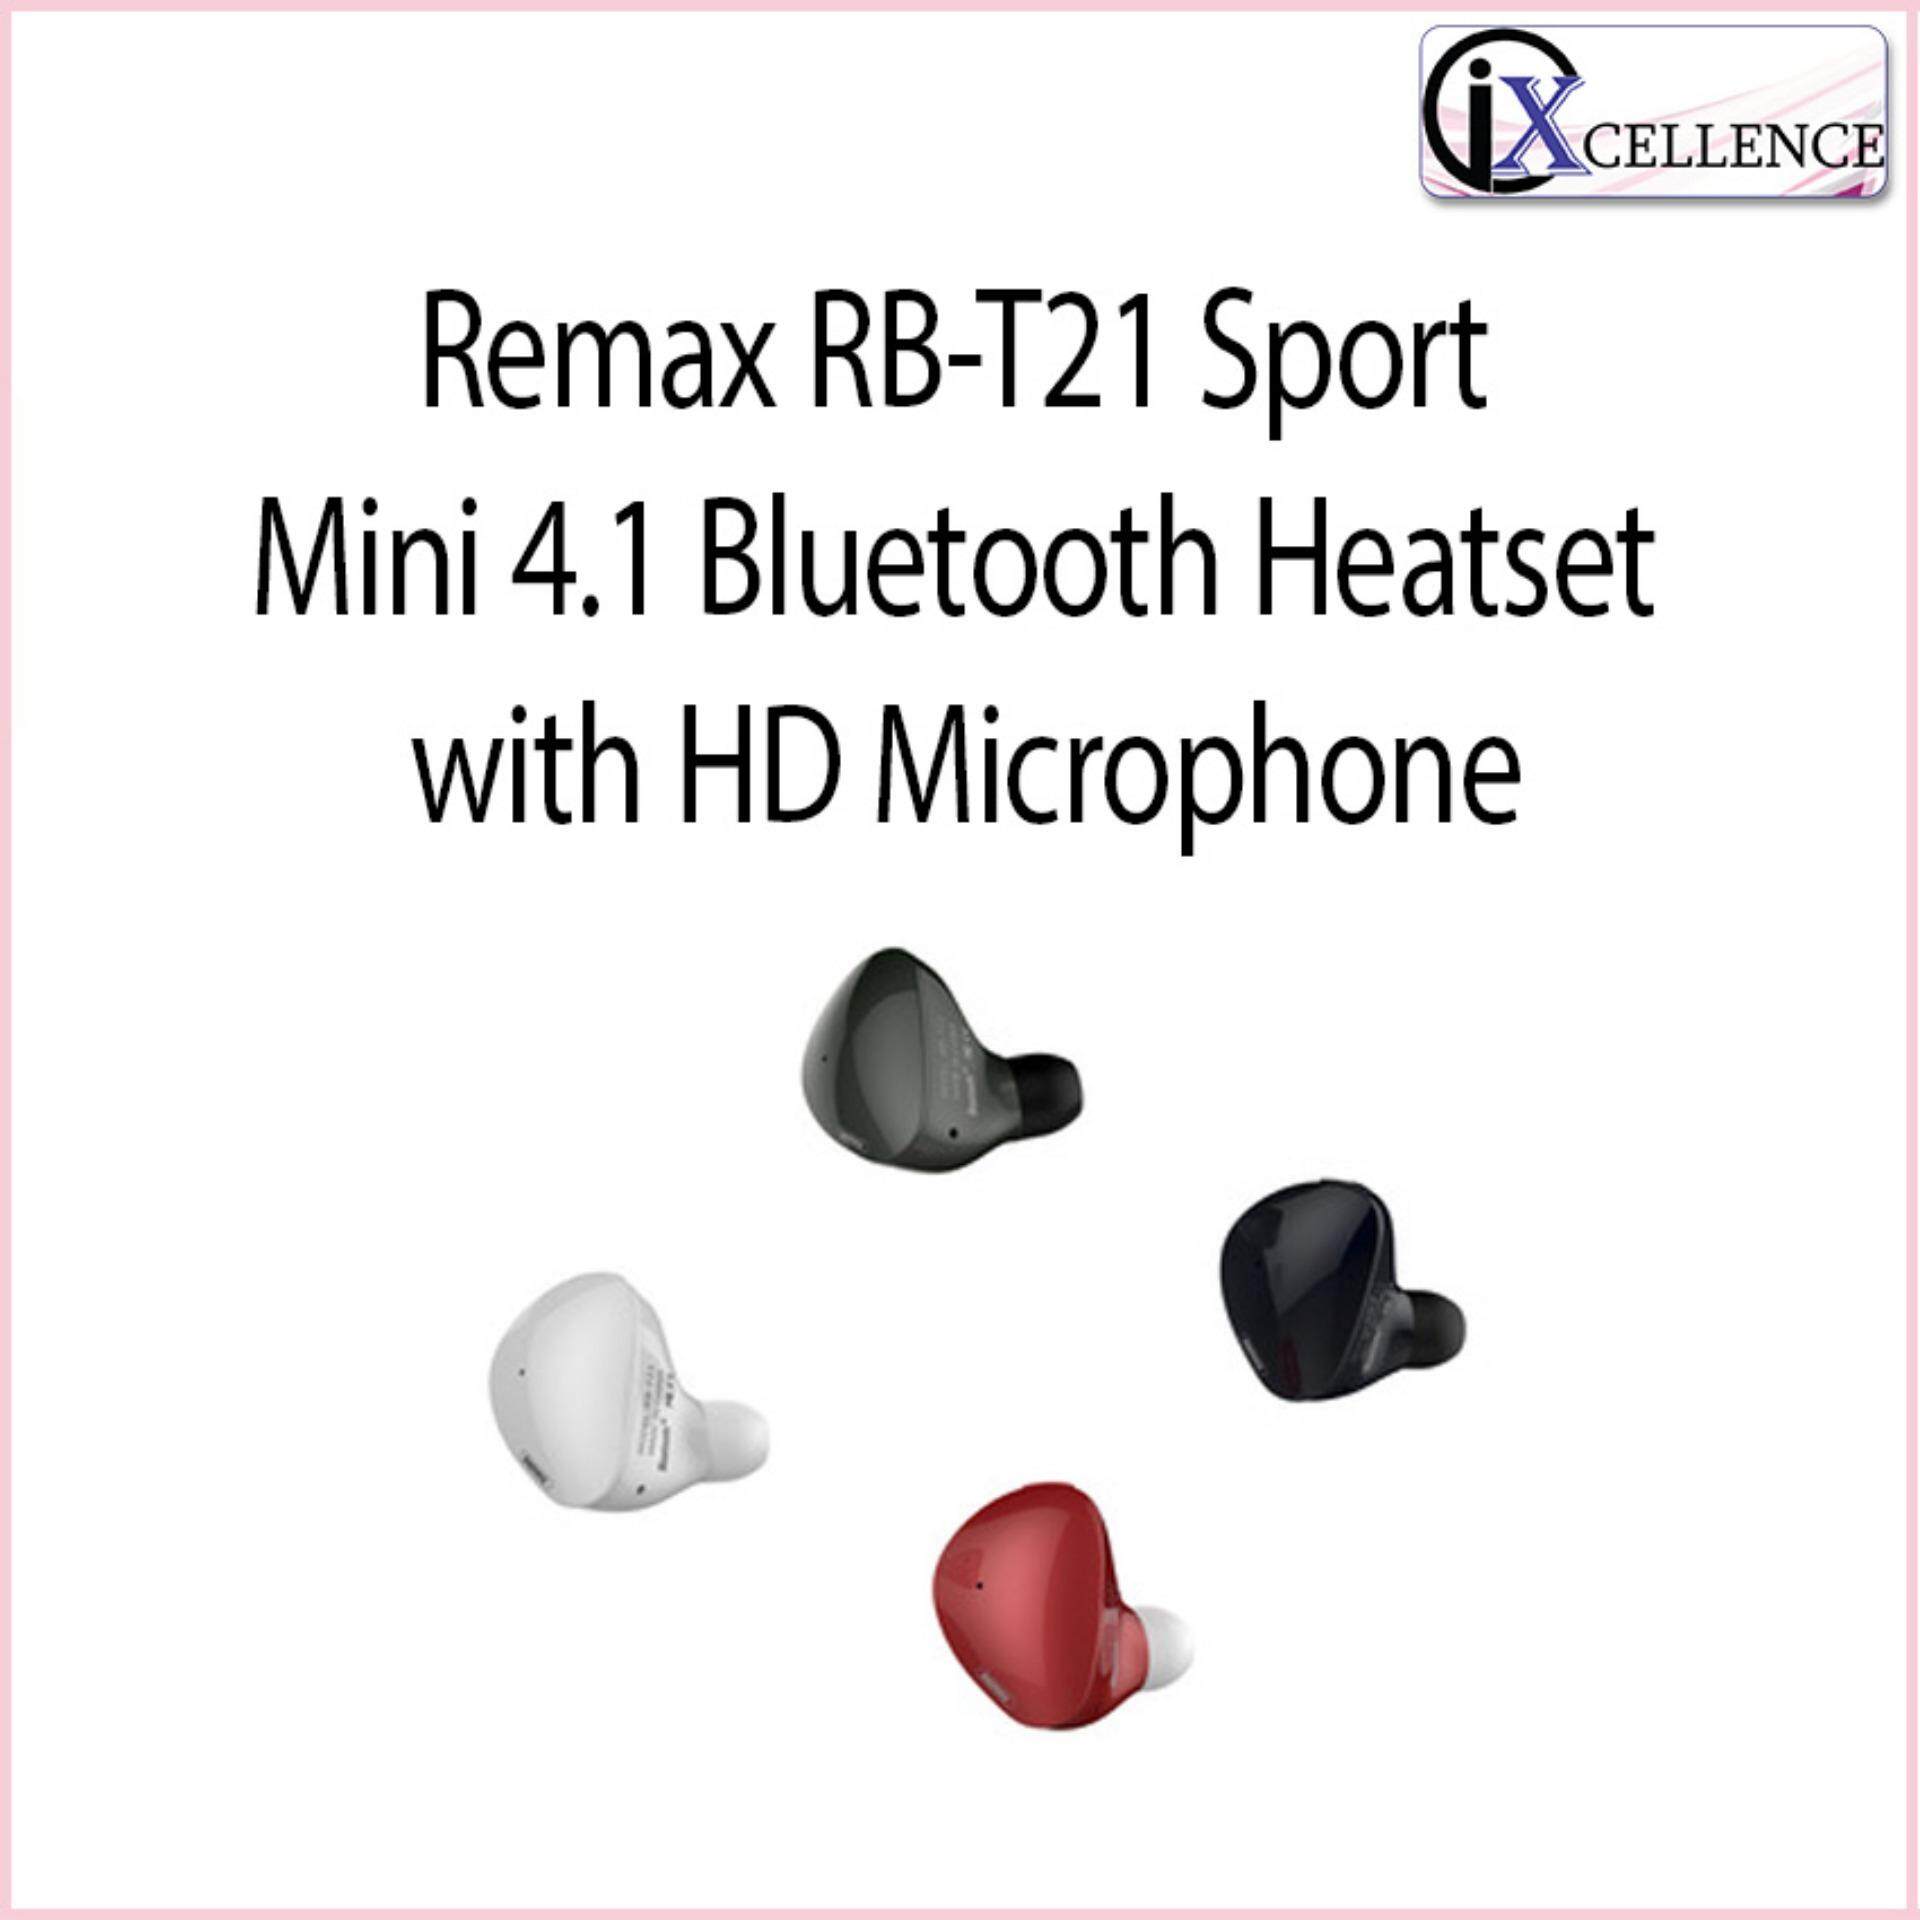 [IX] Remax RB-T21 Sport Mini 4.1 Bluetooth Heatset with HD Microphone